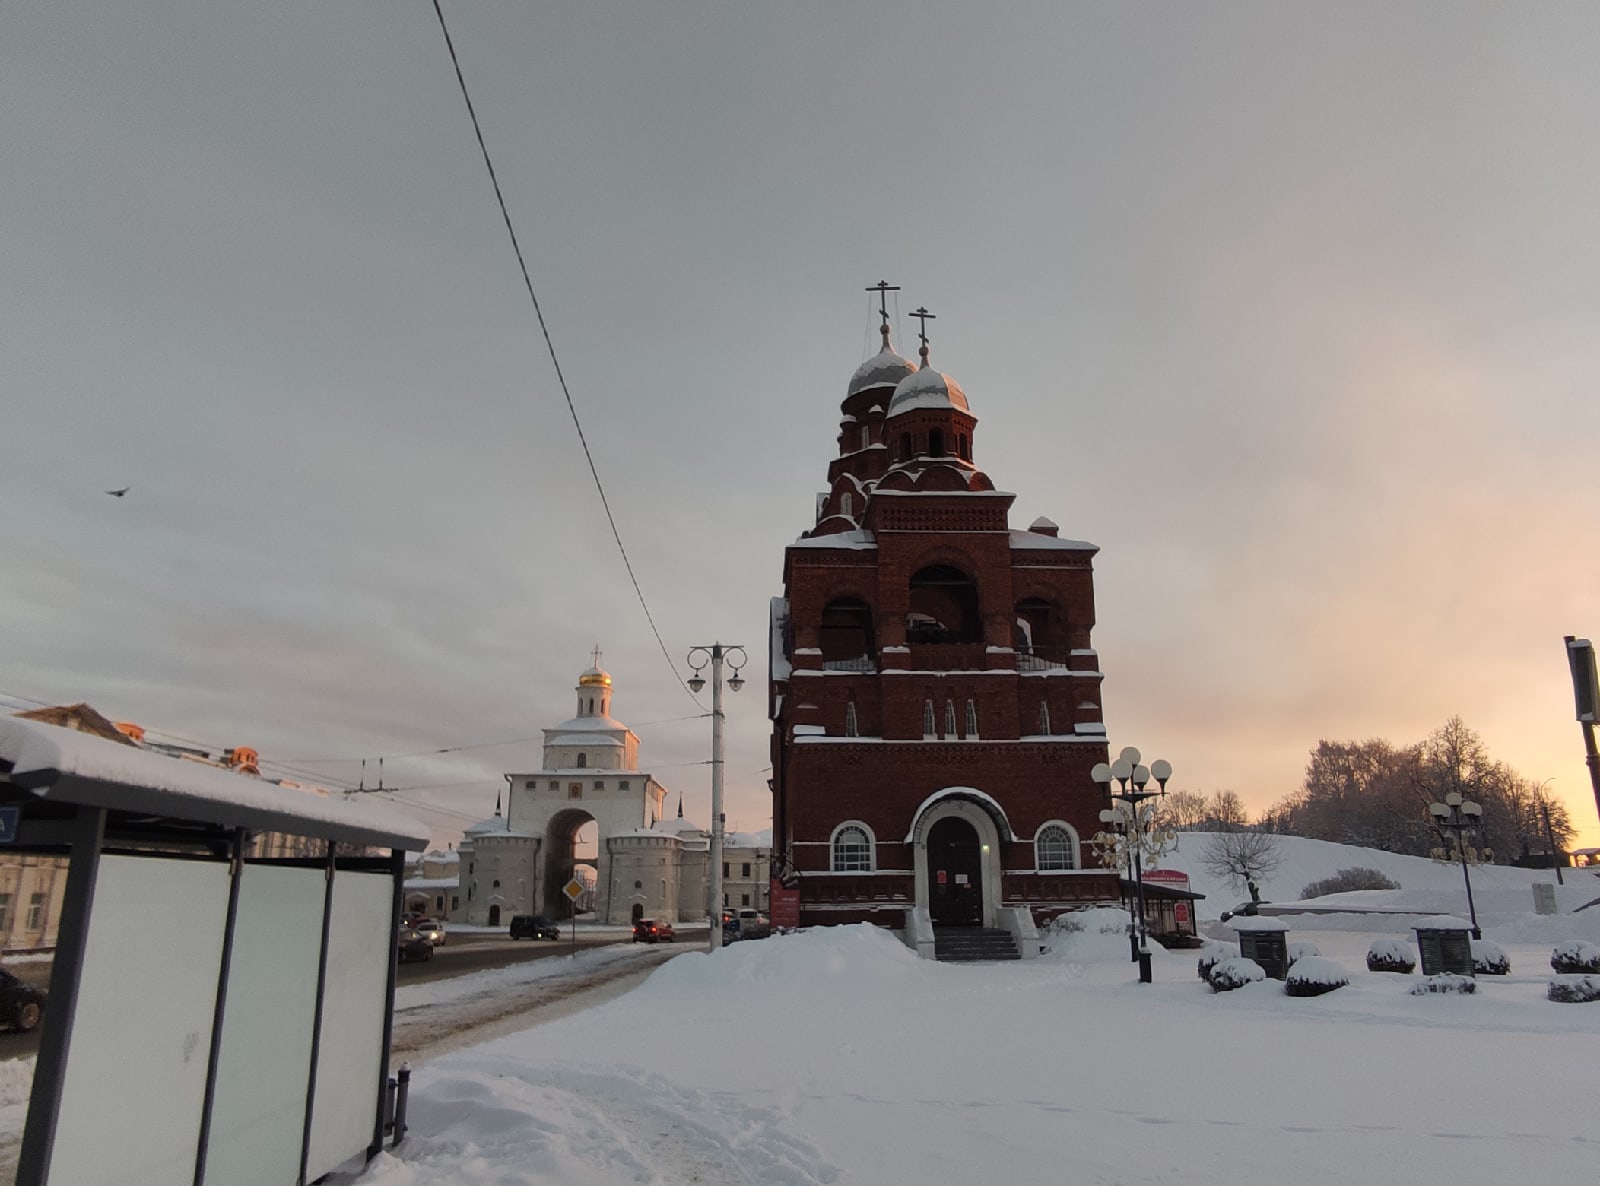  когда во Владимир придут нехарактерные для зимы температуры?